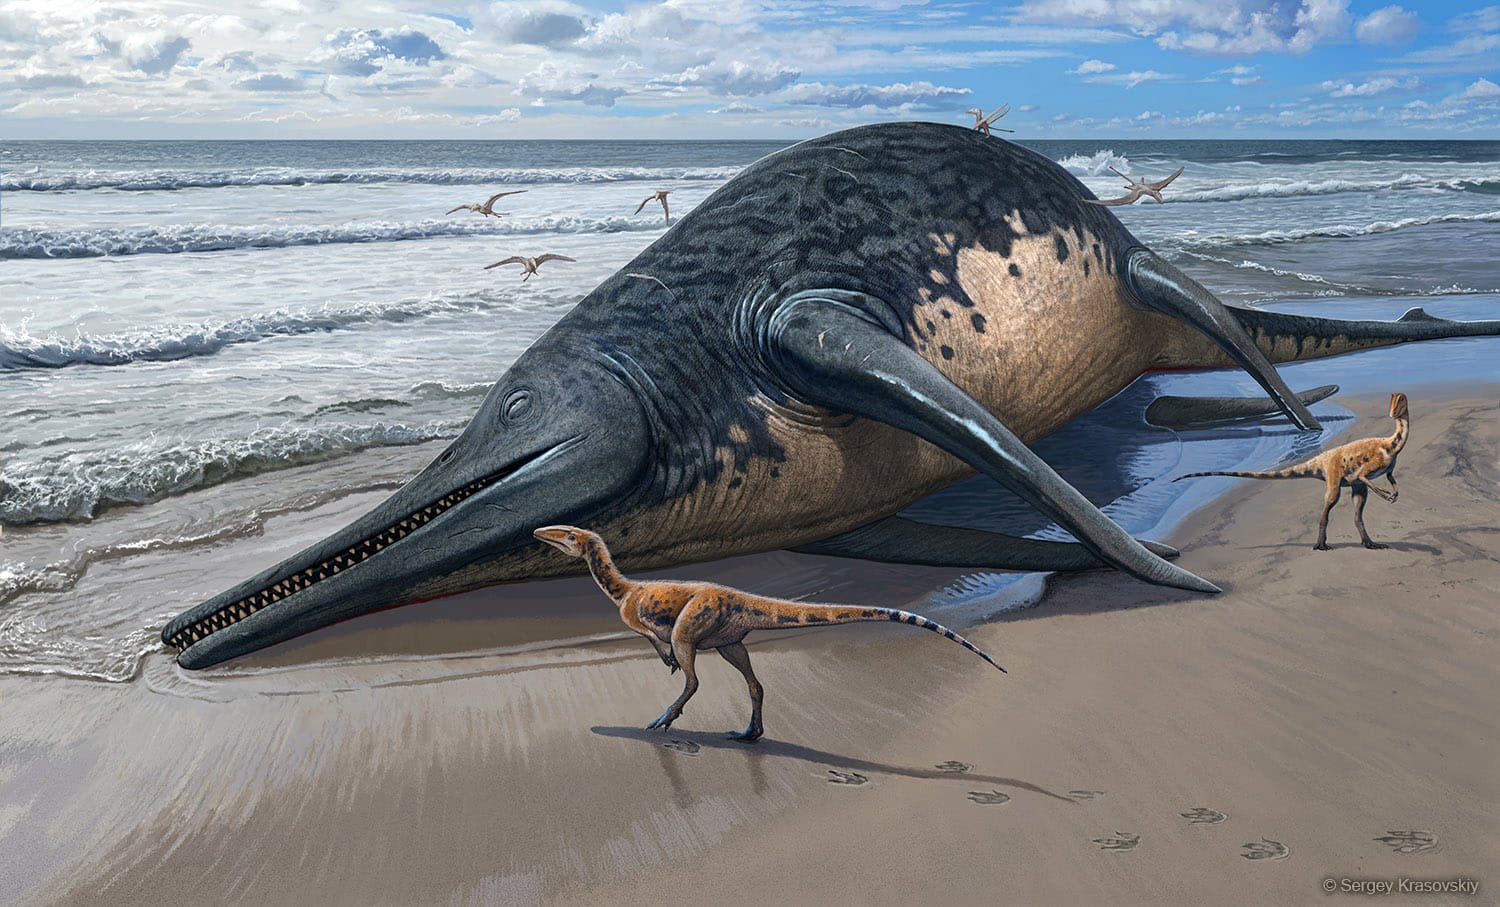 Istorinis radinys: pirmą kartą aptiktos didžiausio kada nors Žemėje gyvenusio jūrų roplio fosilijos